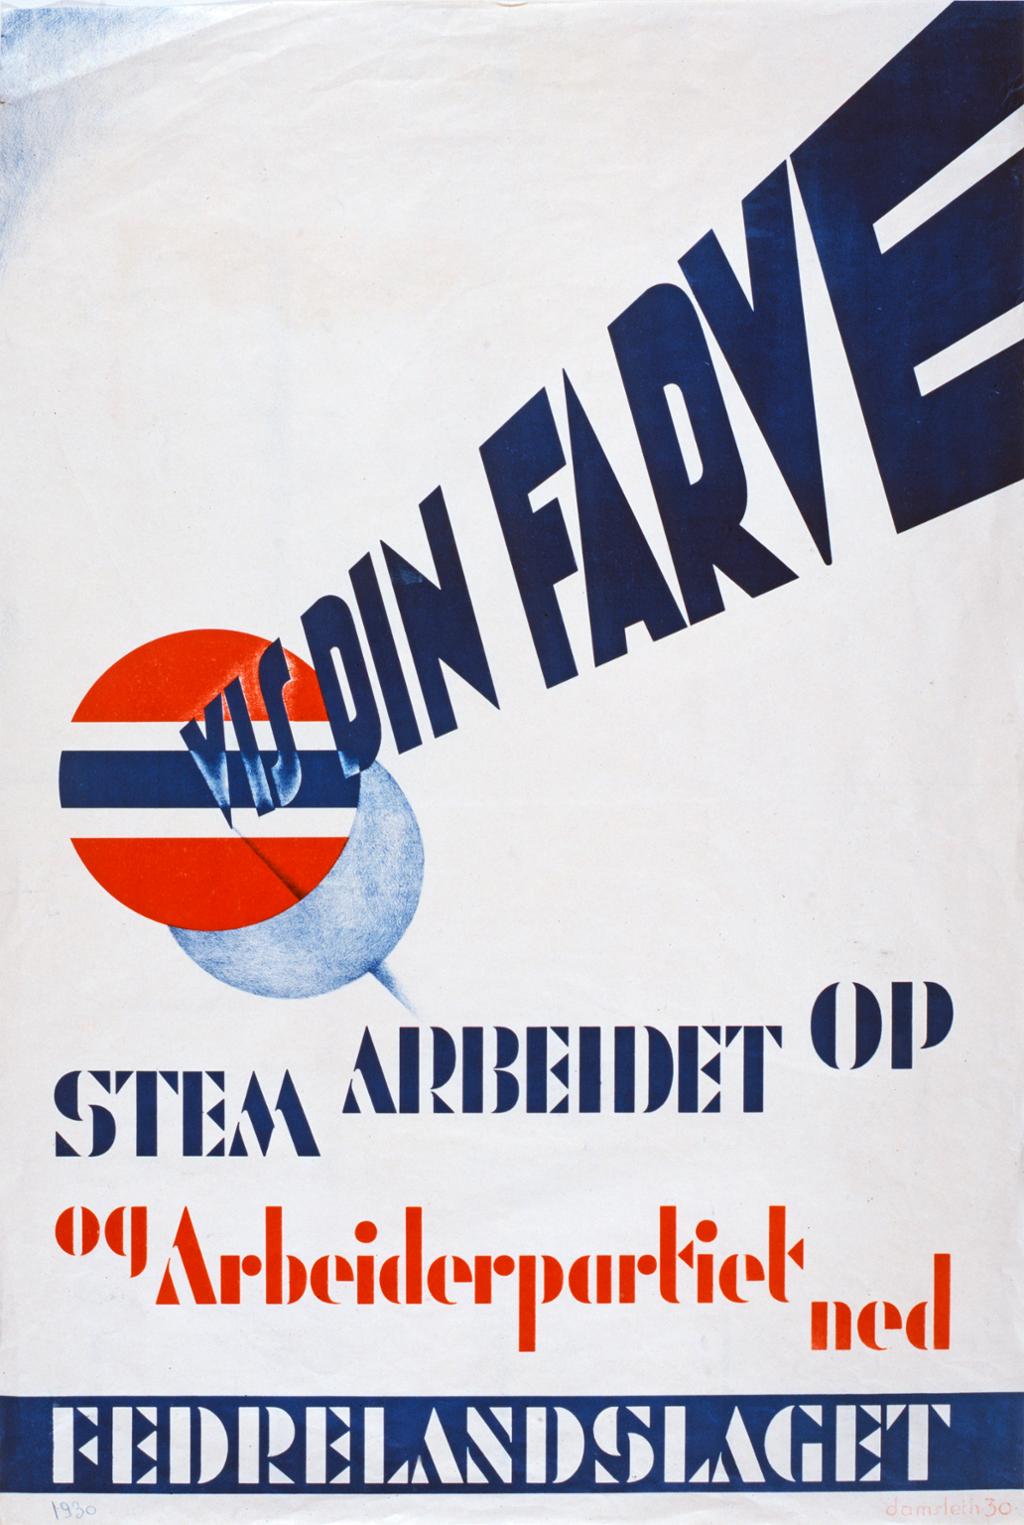 Propagandaplakat frå den politiske organisasjonen Fedrelandslaget, med teksten: "Vis din farve. Stem Arbeidet opp og Arbeiderpartiet ned."